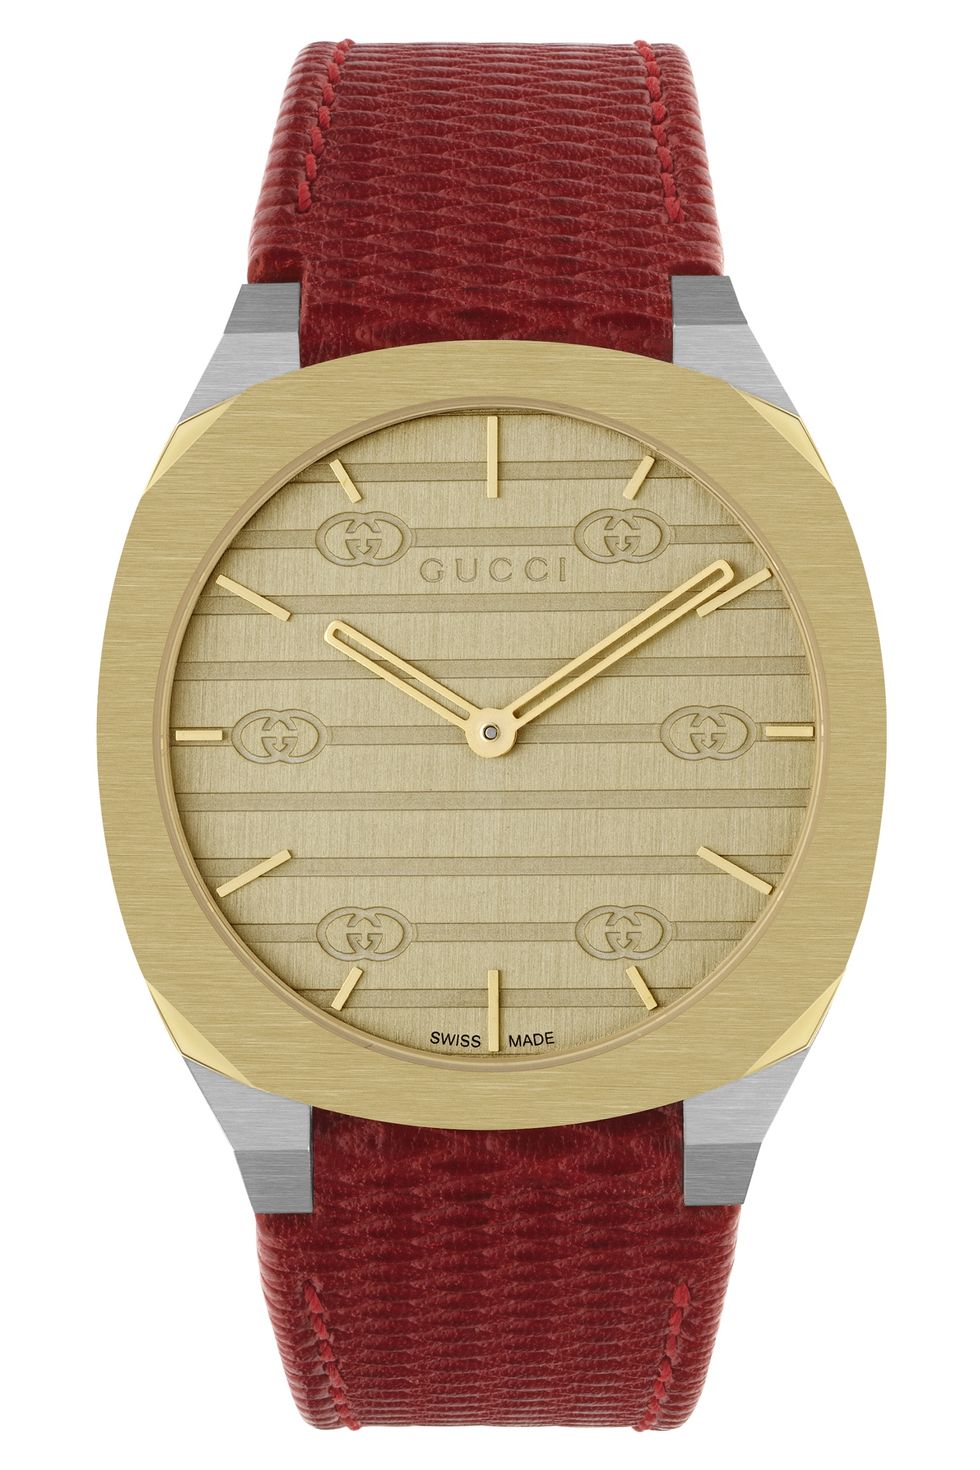 Gucci Women's Petite S-Steel Case Watch